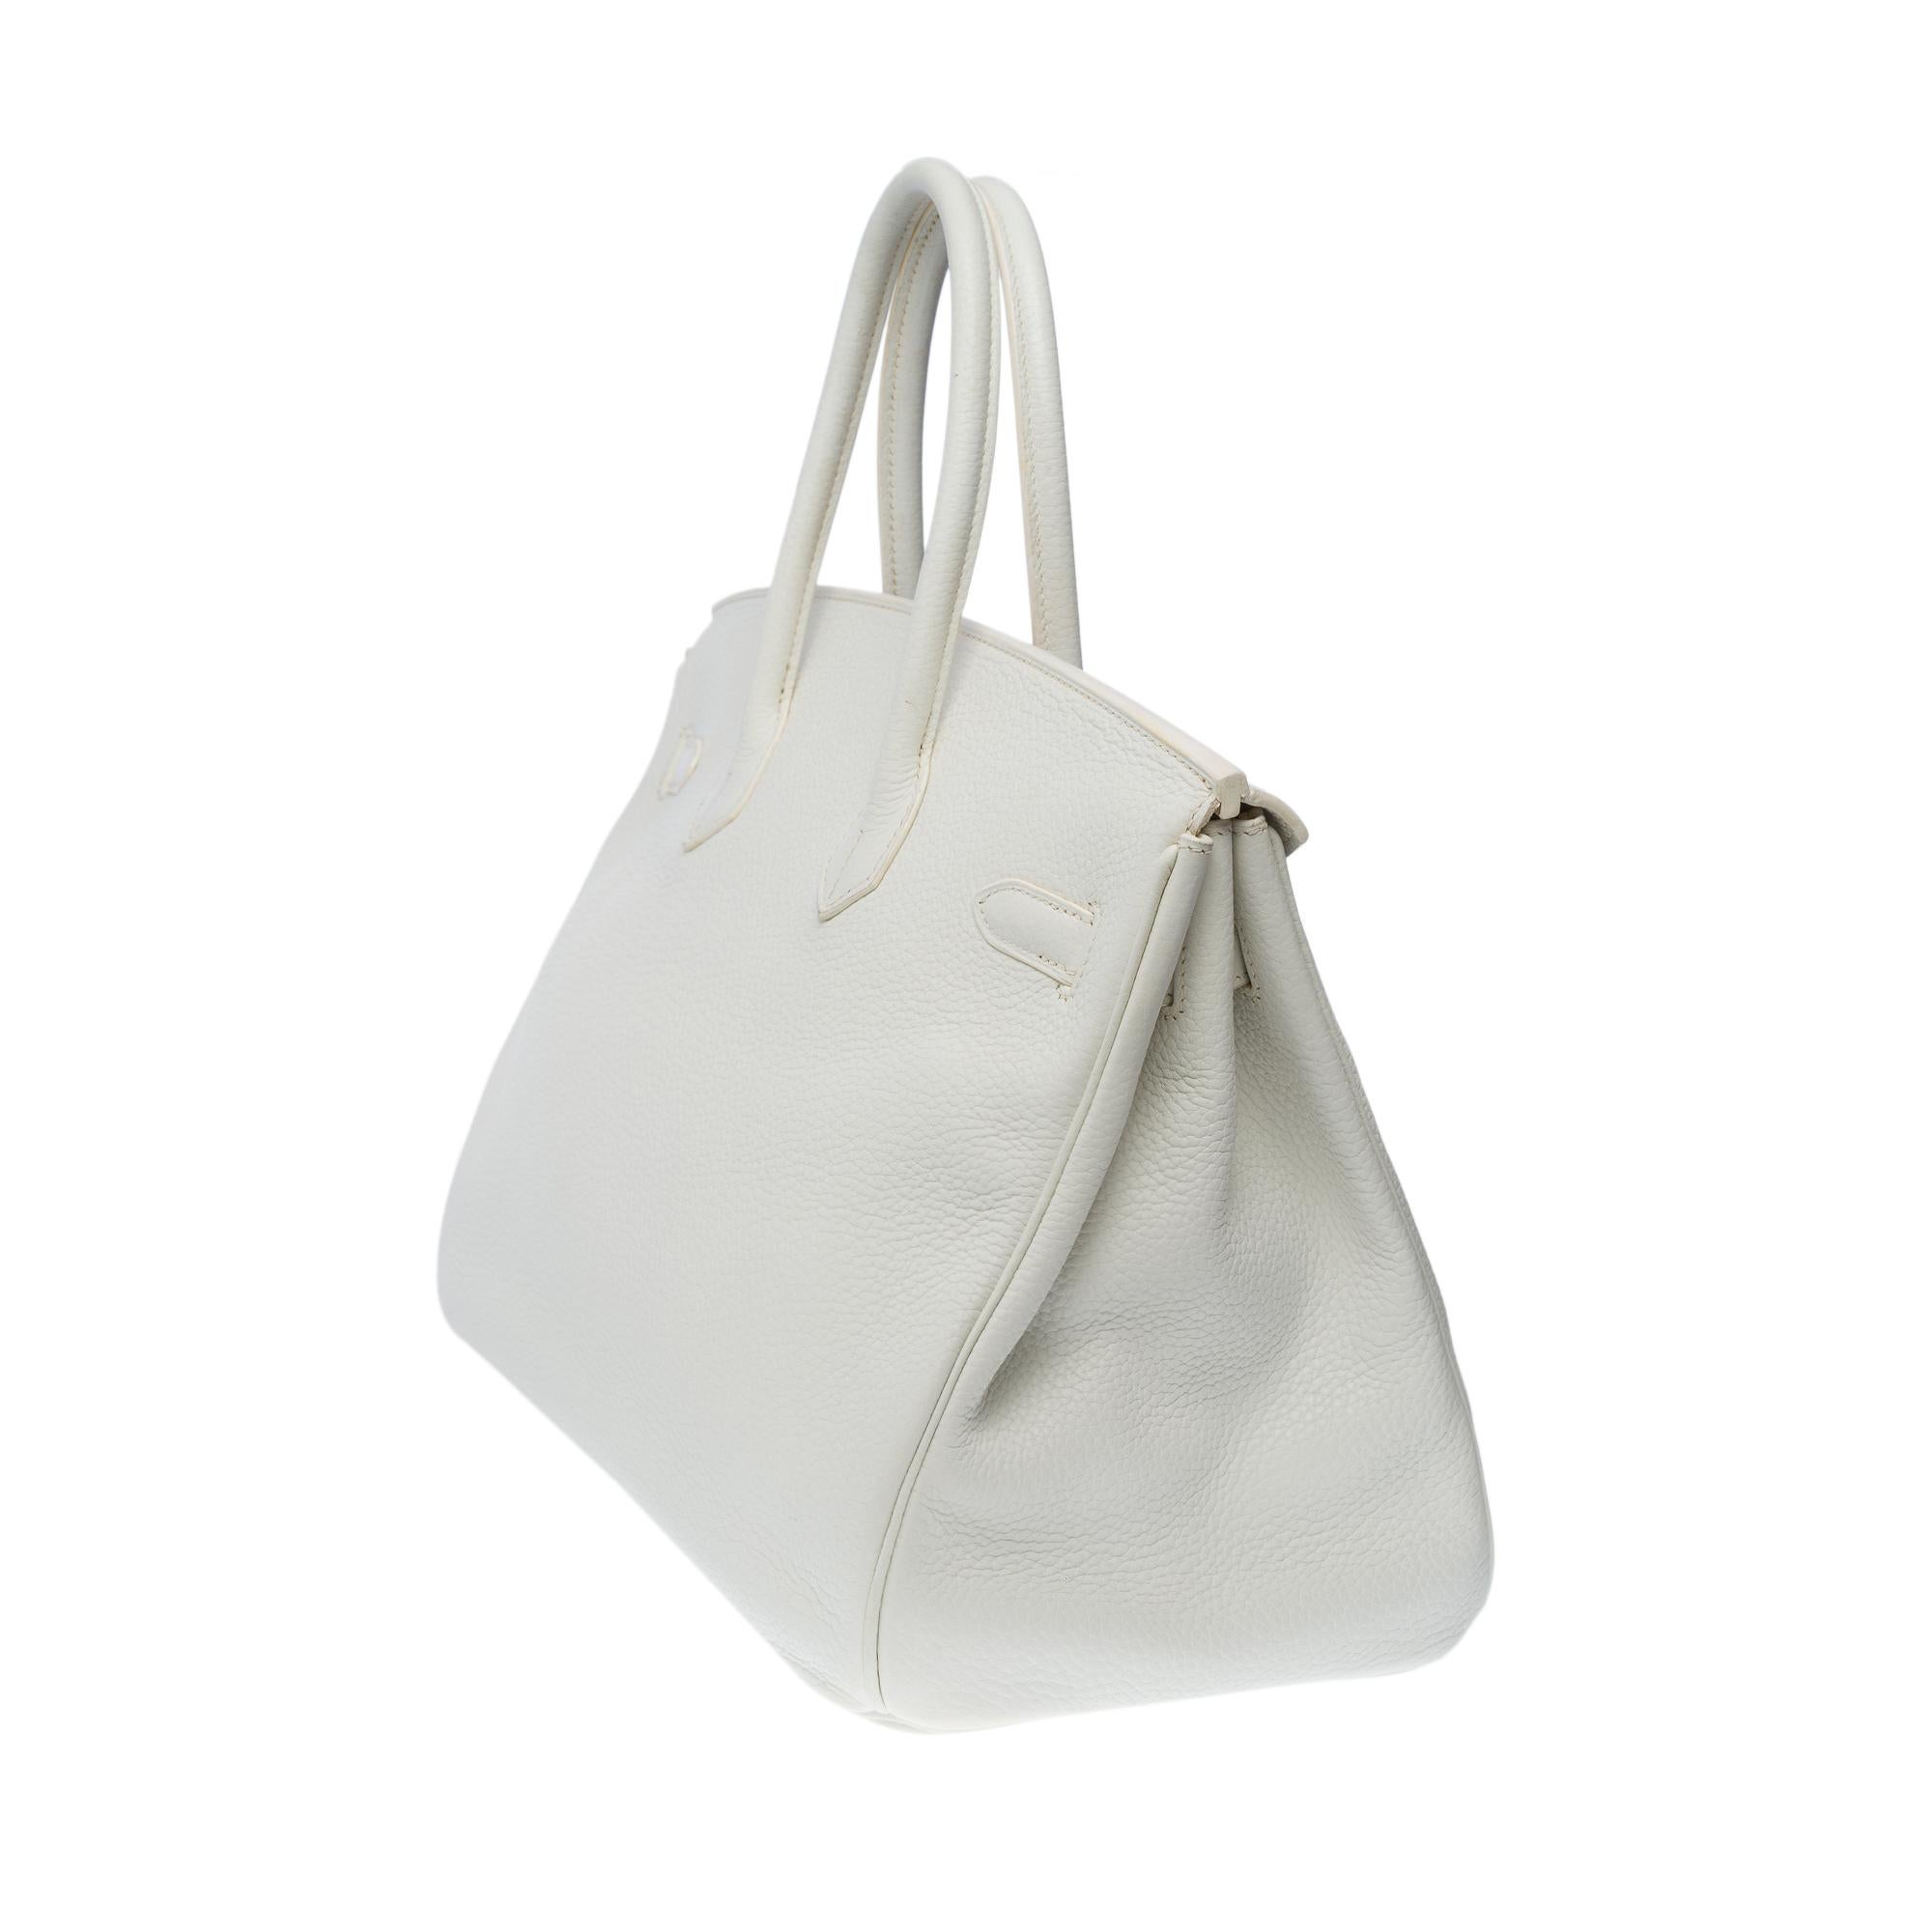 Stunning Hermès Birkin 35 handbag in white Togo leather, SHW In Good Condition In Paris, IDF